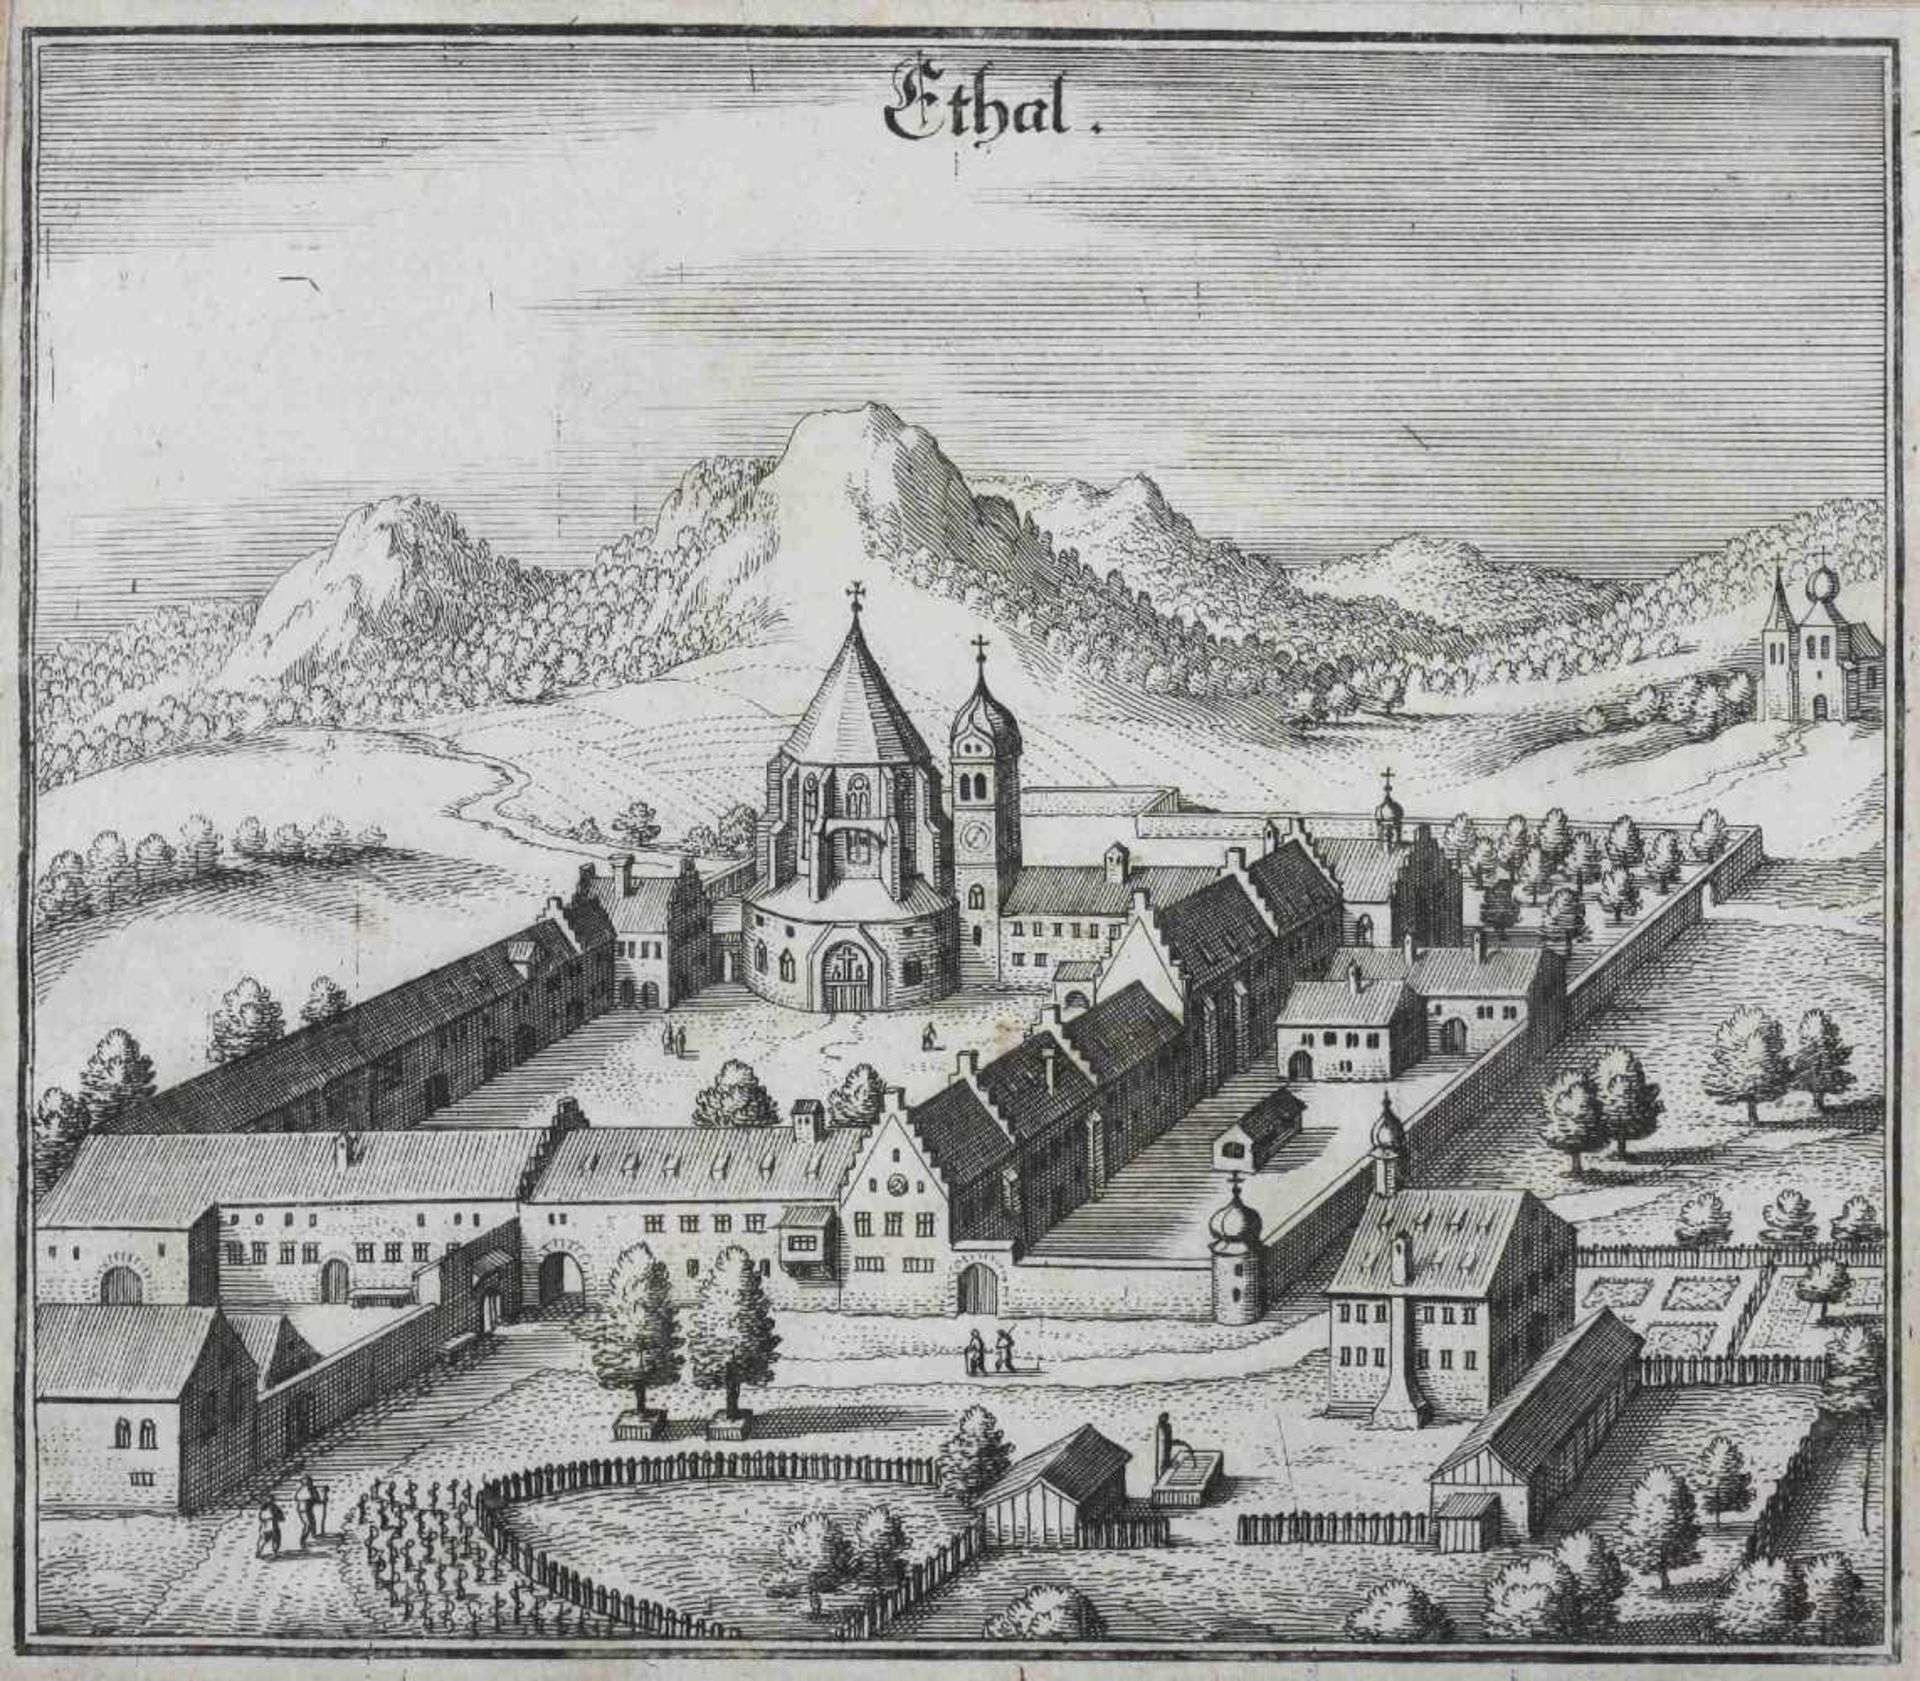 Kloster Ethal, Kupferstich, nach dem Original Kupferstich von Matthäus Merian aus der Topographia